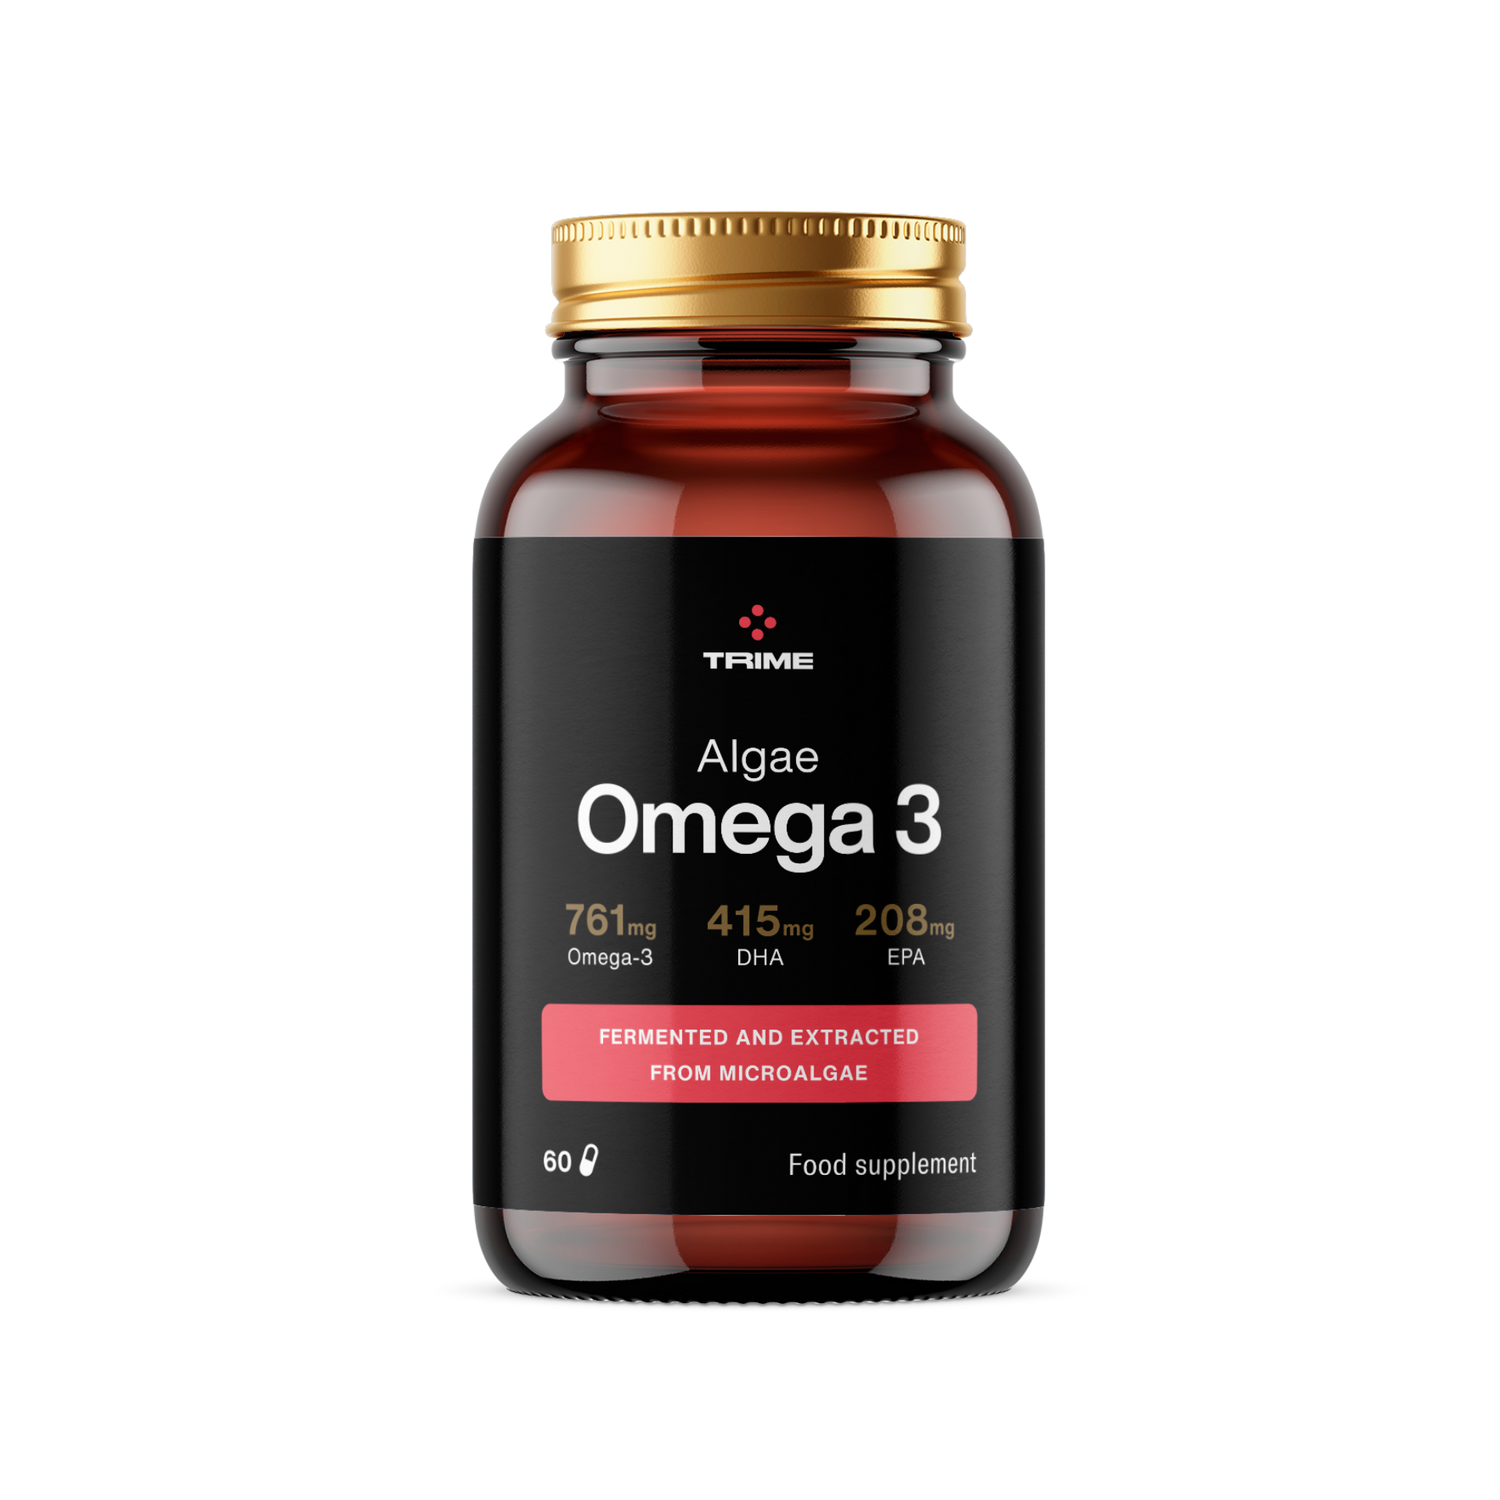 Algae Omega 3 60 cps#60